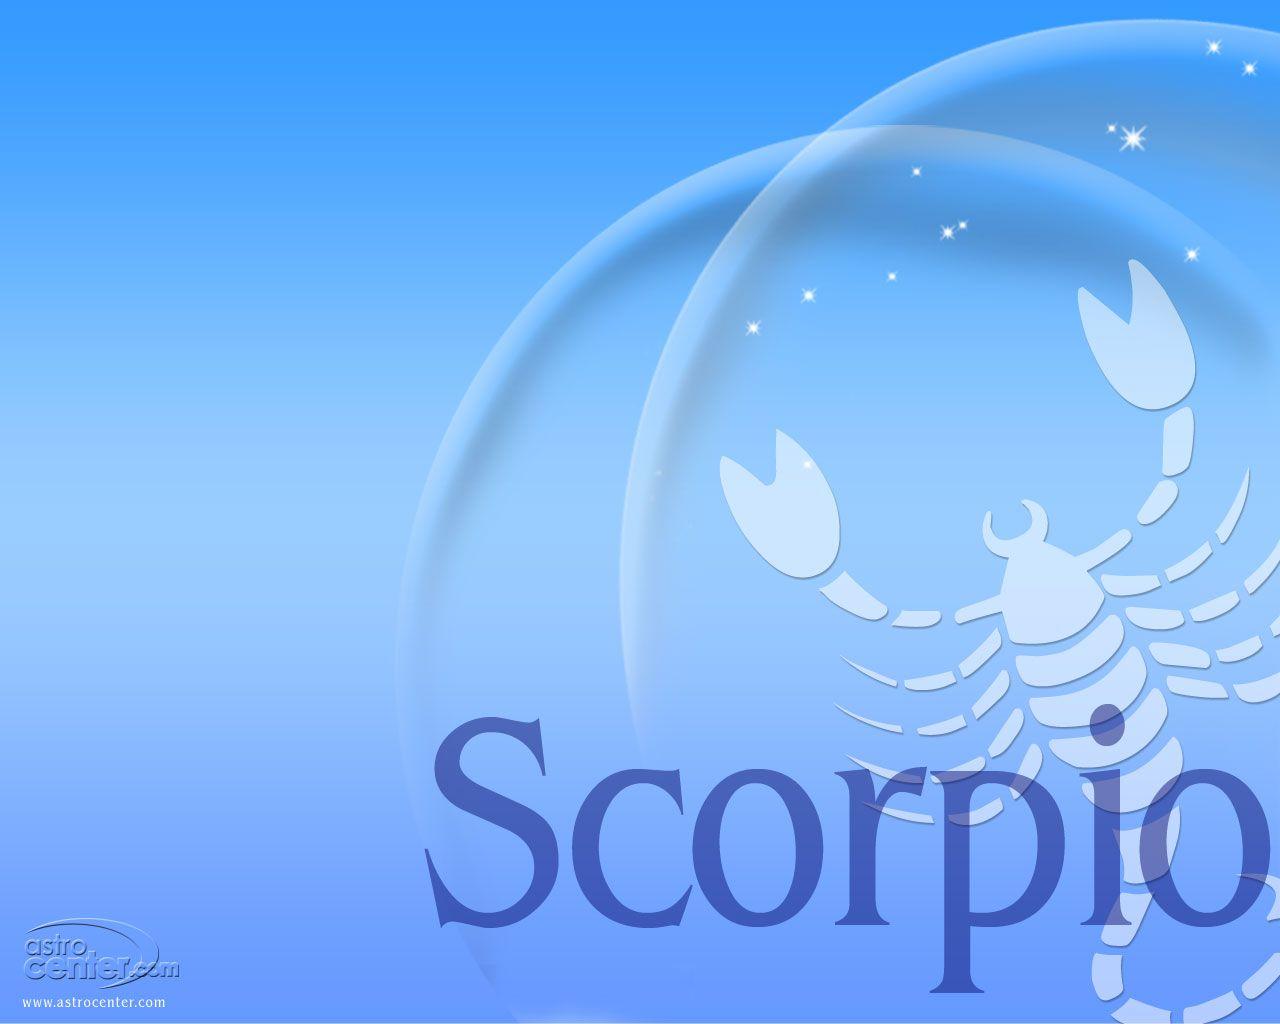 Scorpio Zodiac Sign Wallpaper. scorpio wallpaper. Scorpio